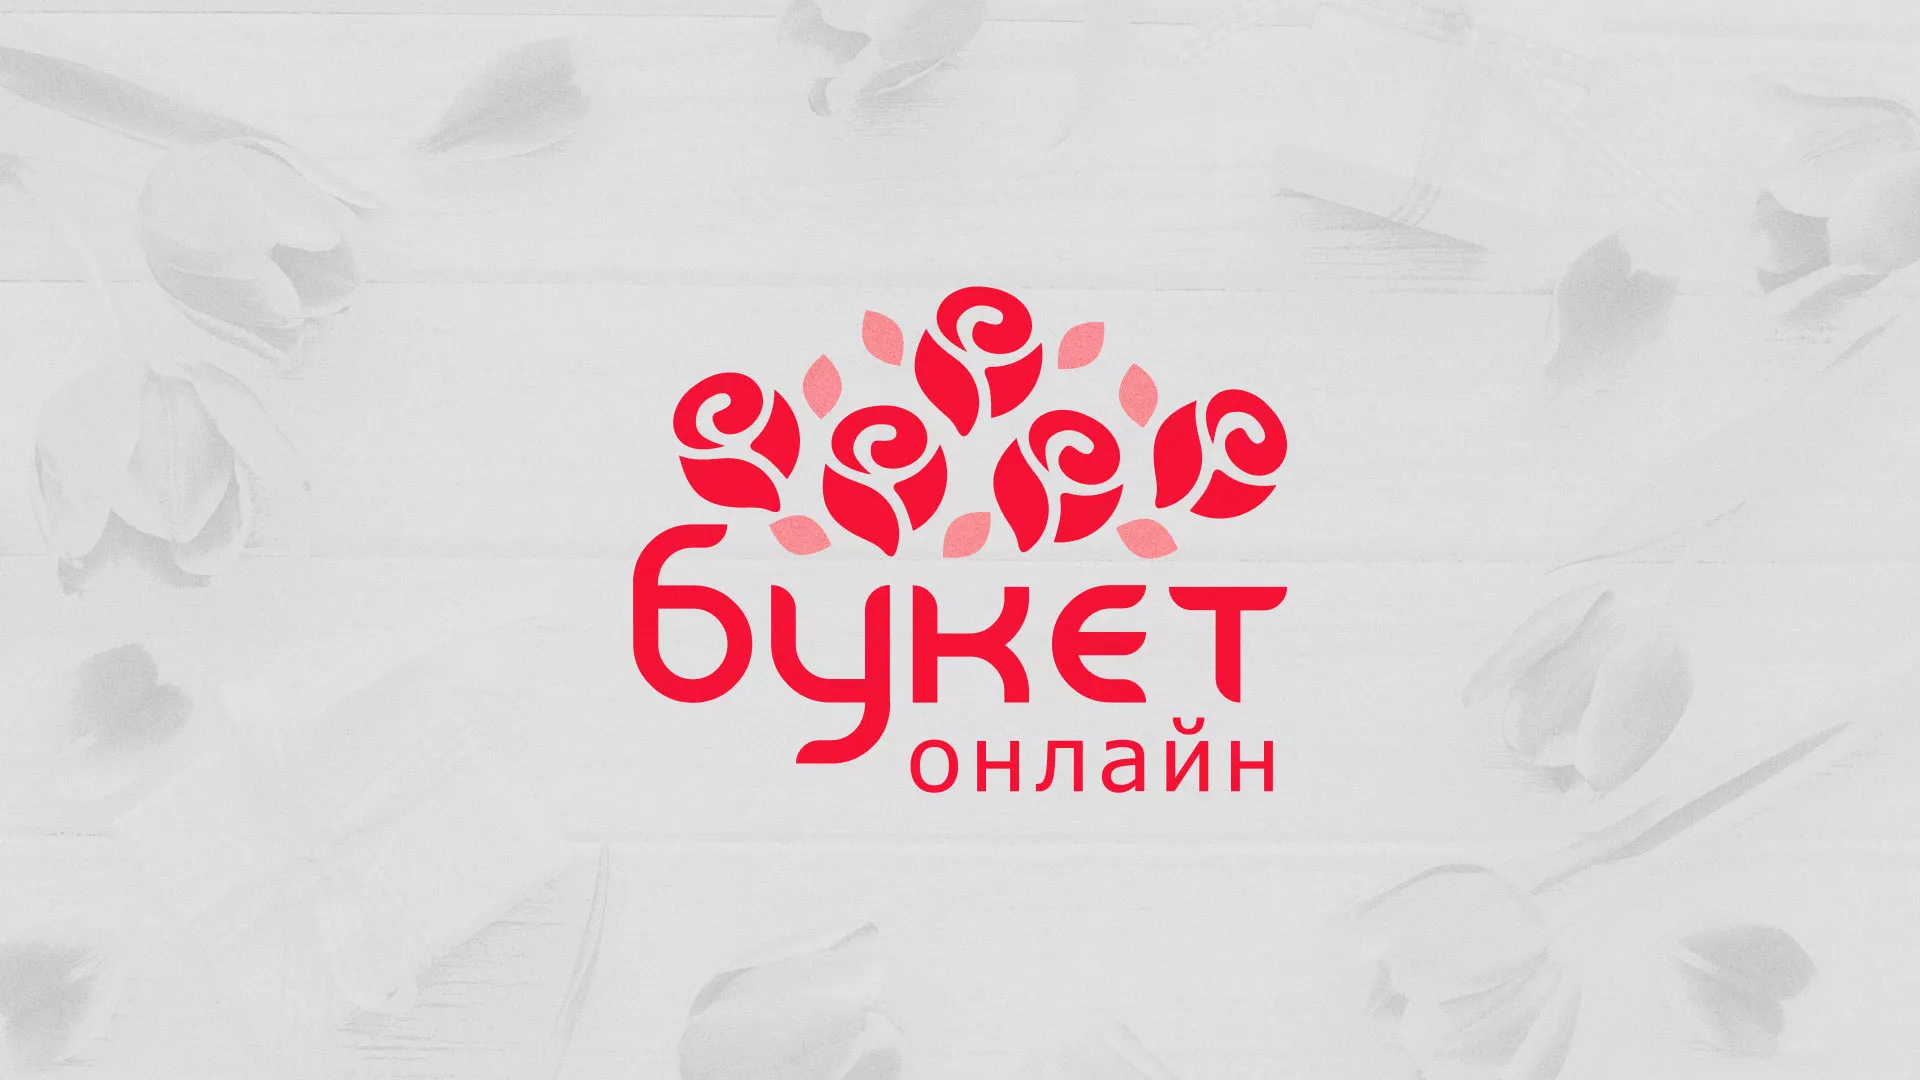 Создание интернет-магазина «Букет-онлайн» по цветам в Красном Селе